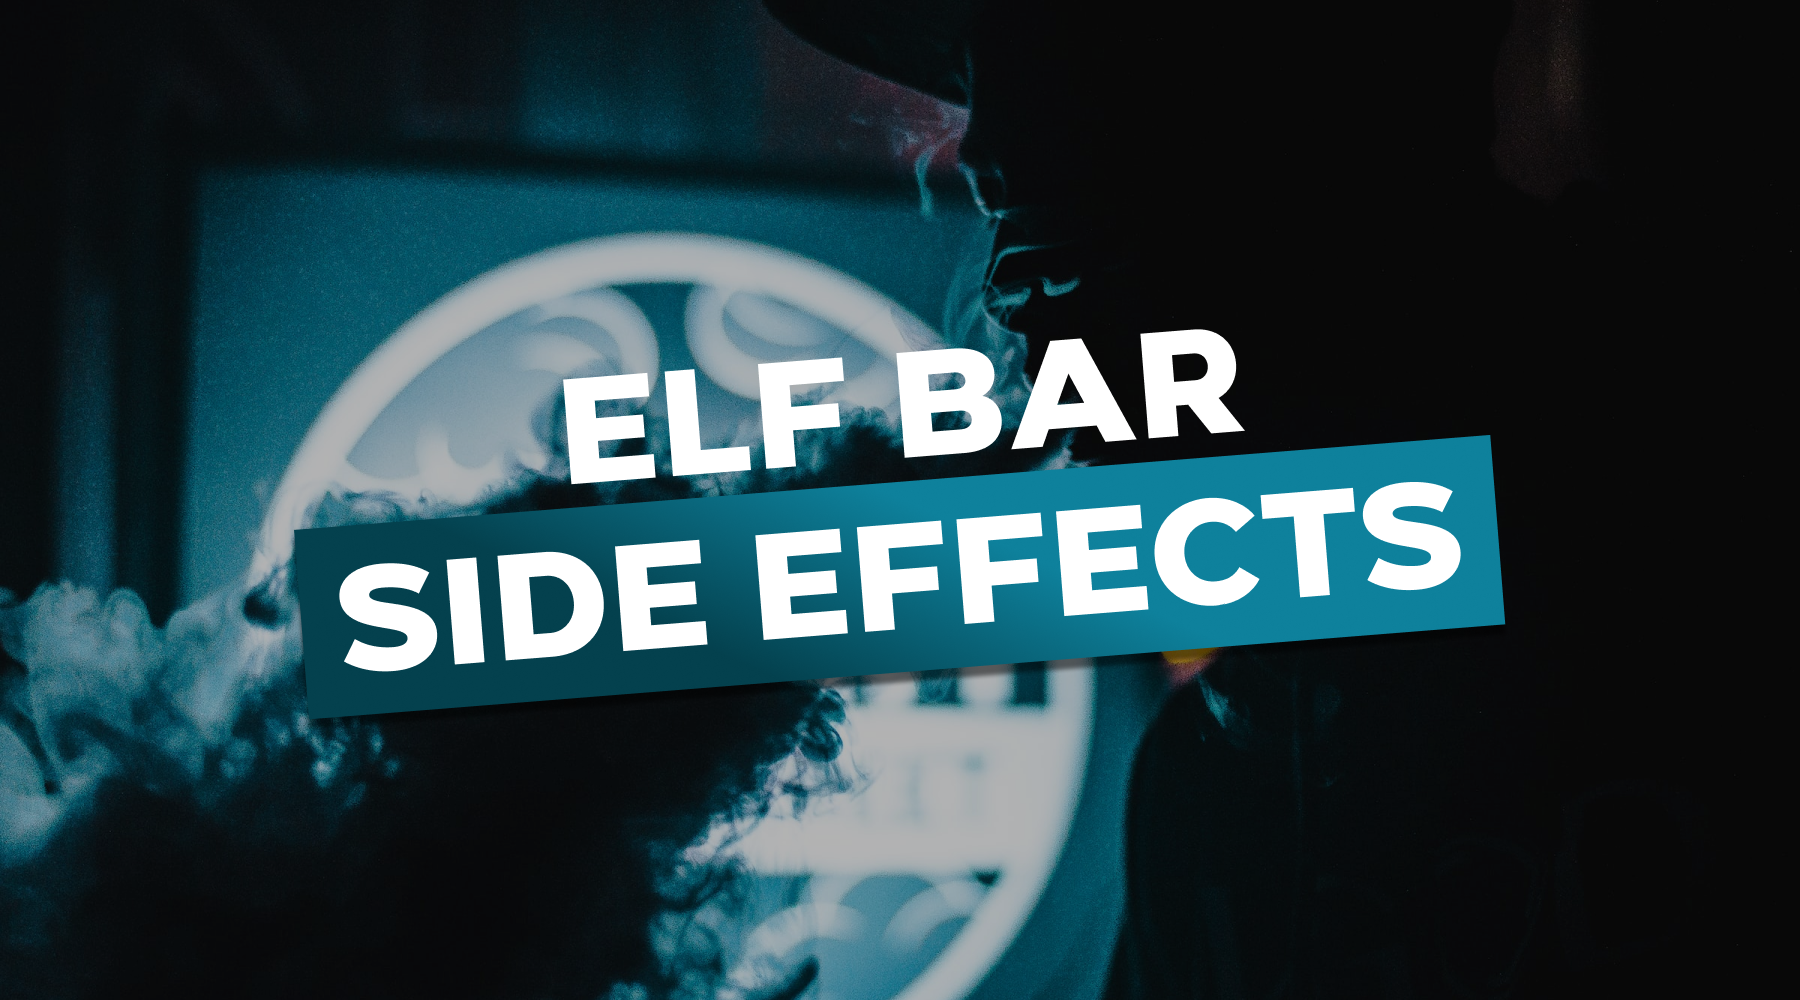 Elf Bar side effects